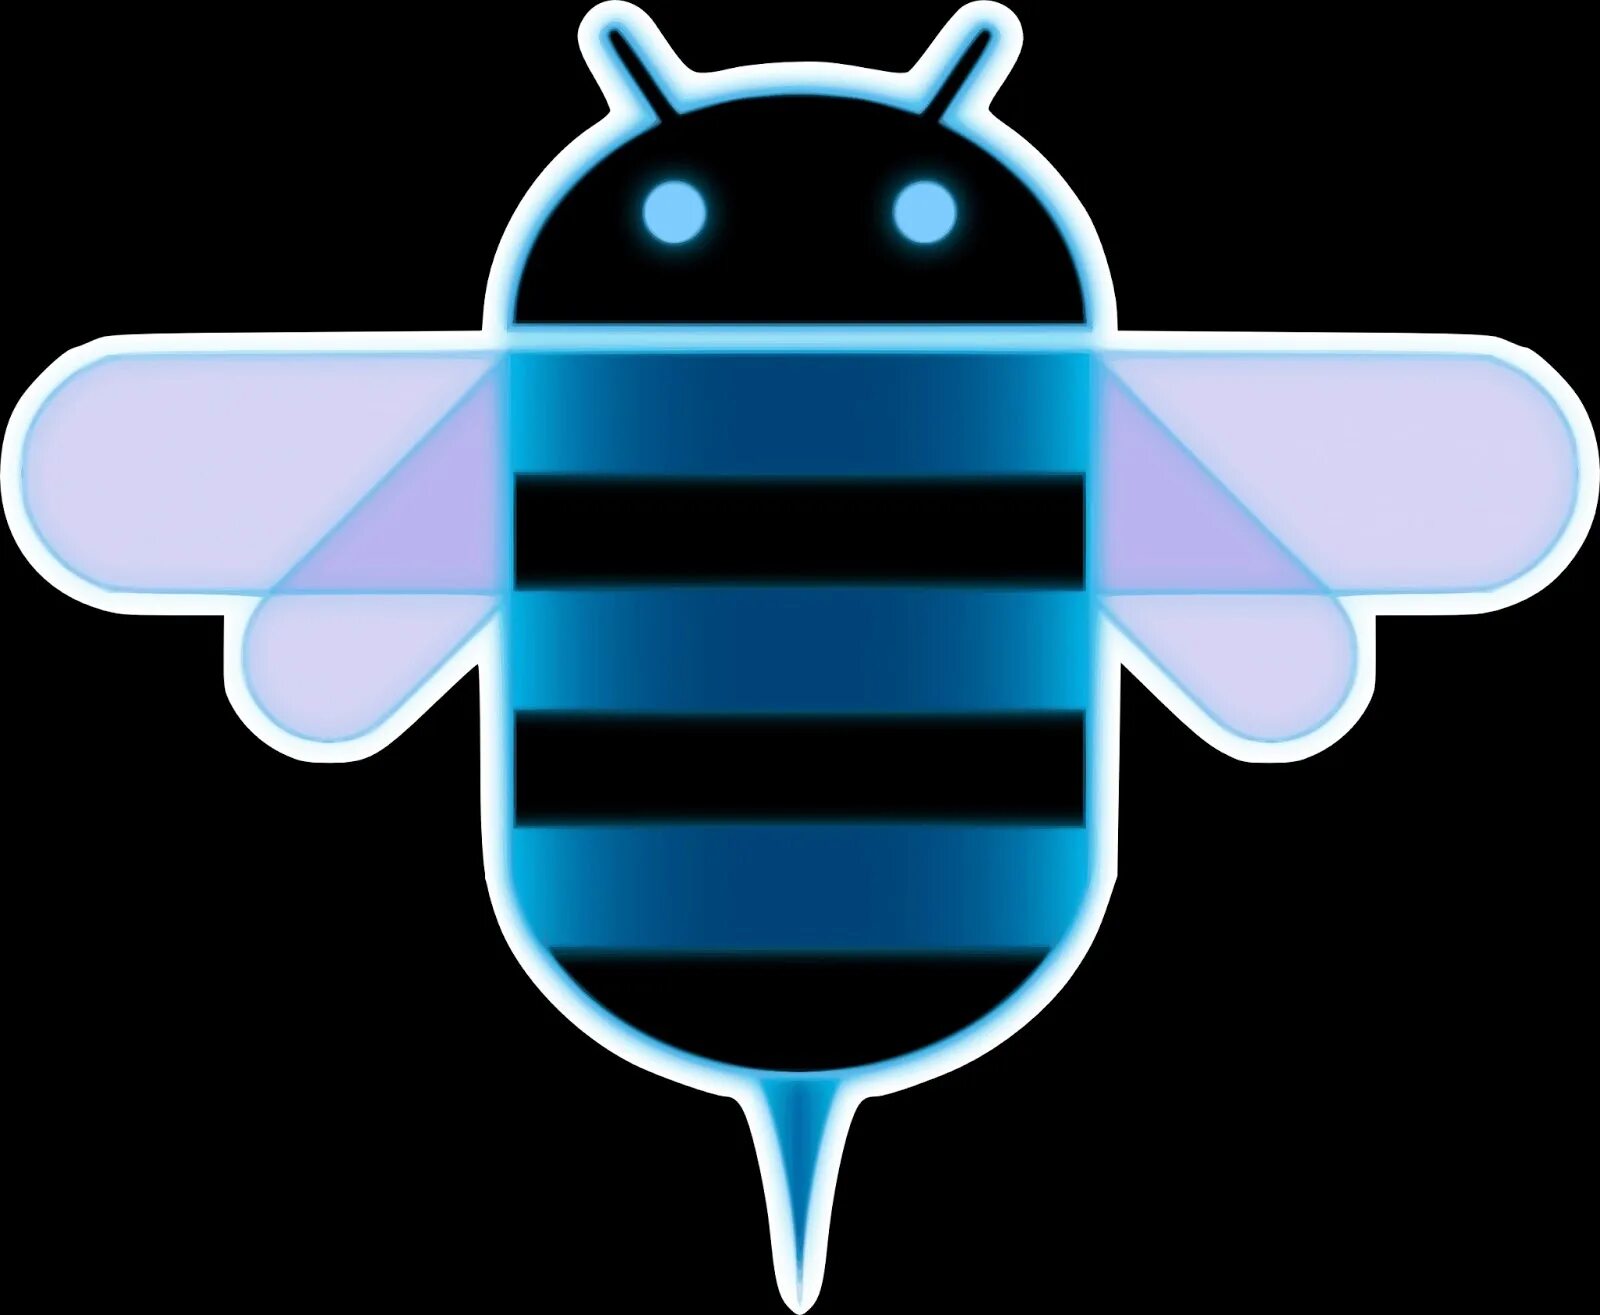 Honeycomb андроид. Android 3.0 Honeycomb. Логотип андроид. Андроид пчела. Андроид 1.0 3